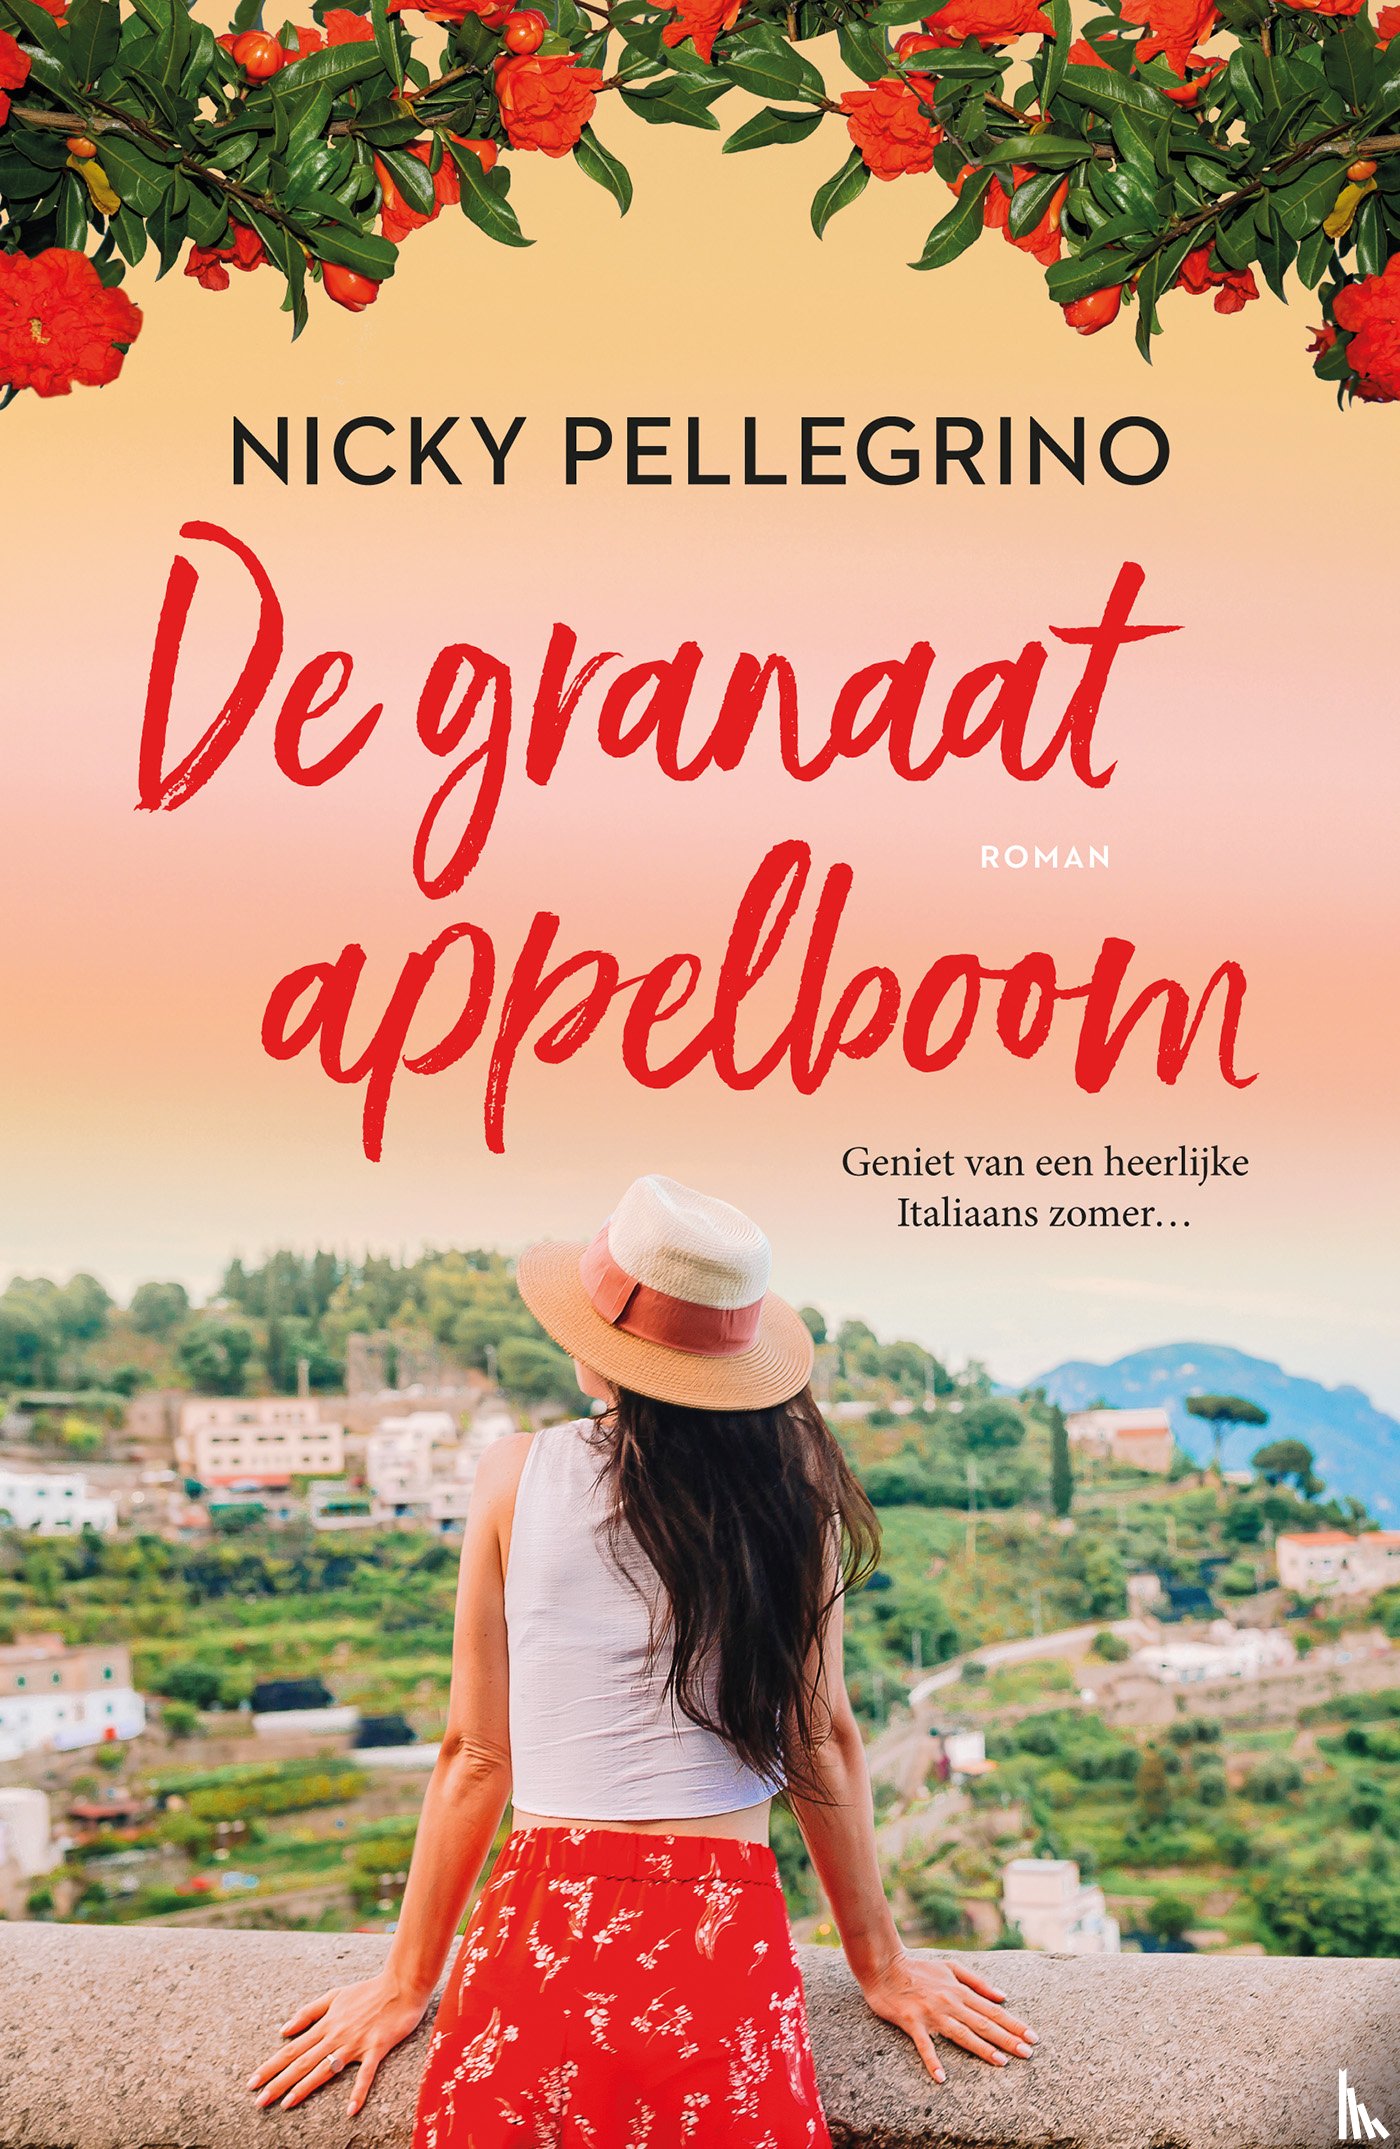 Pellegrino, Nicky - De granaatappelboom